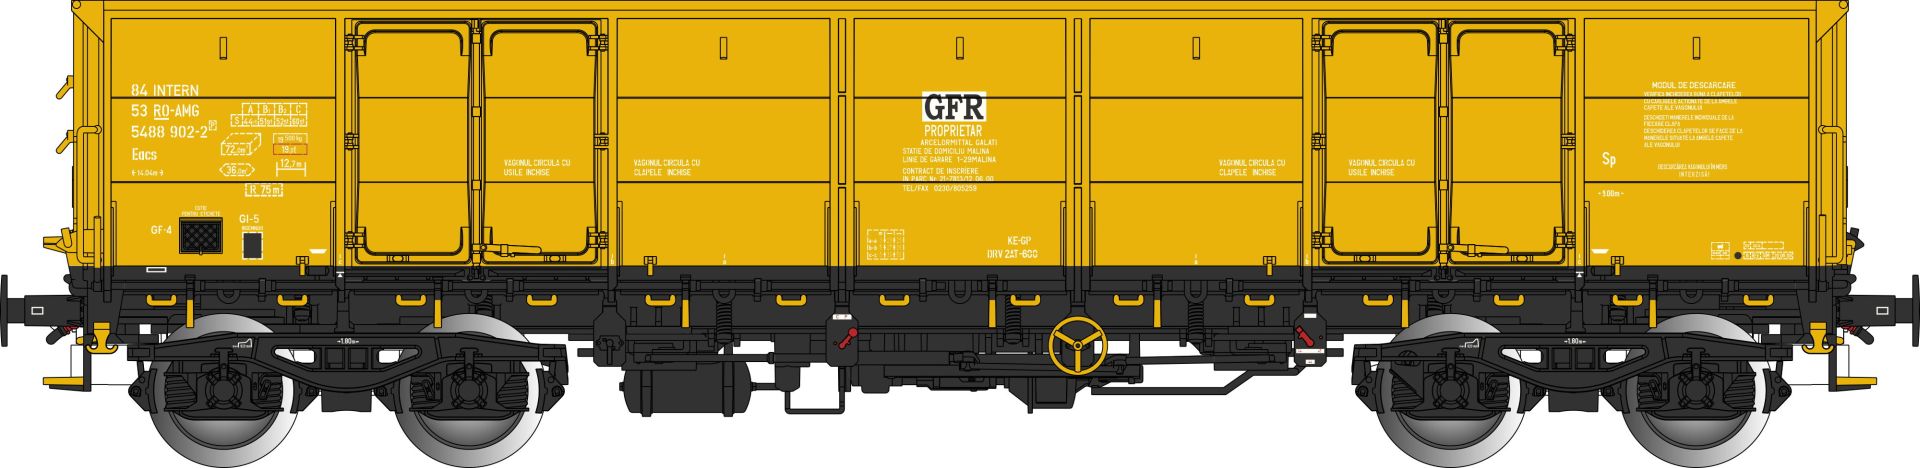 Albert Modell 548001 - Offener Güterwagen Eacs, RO-GFR, Ep.VI